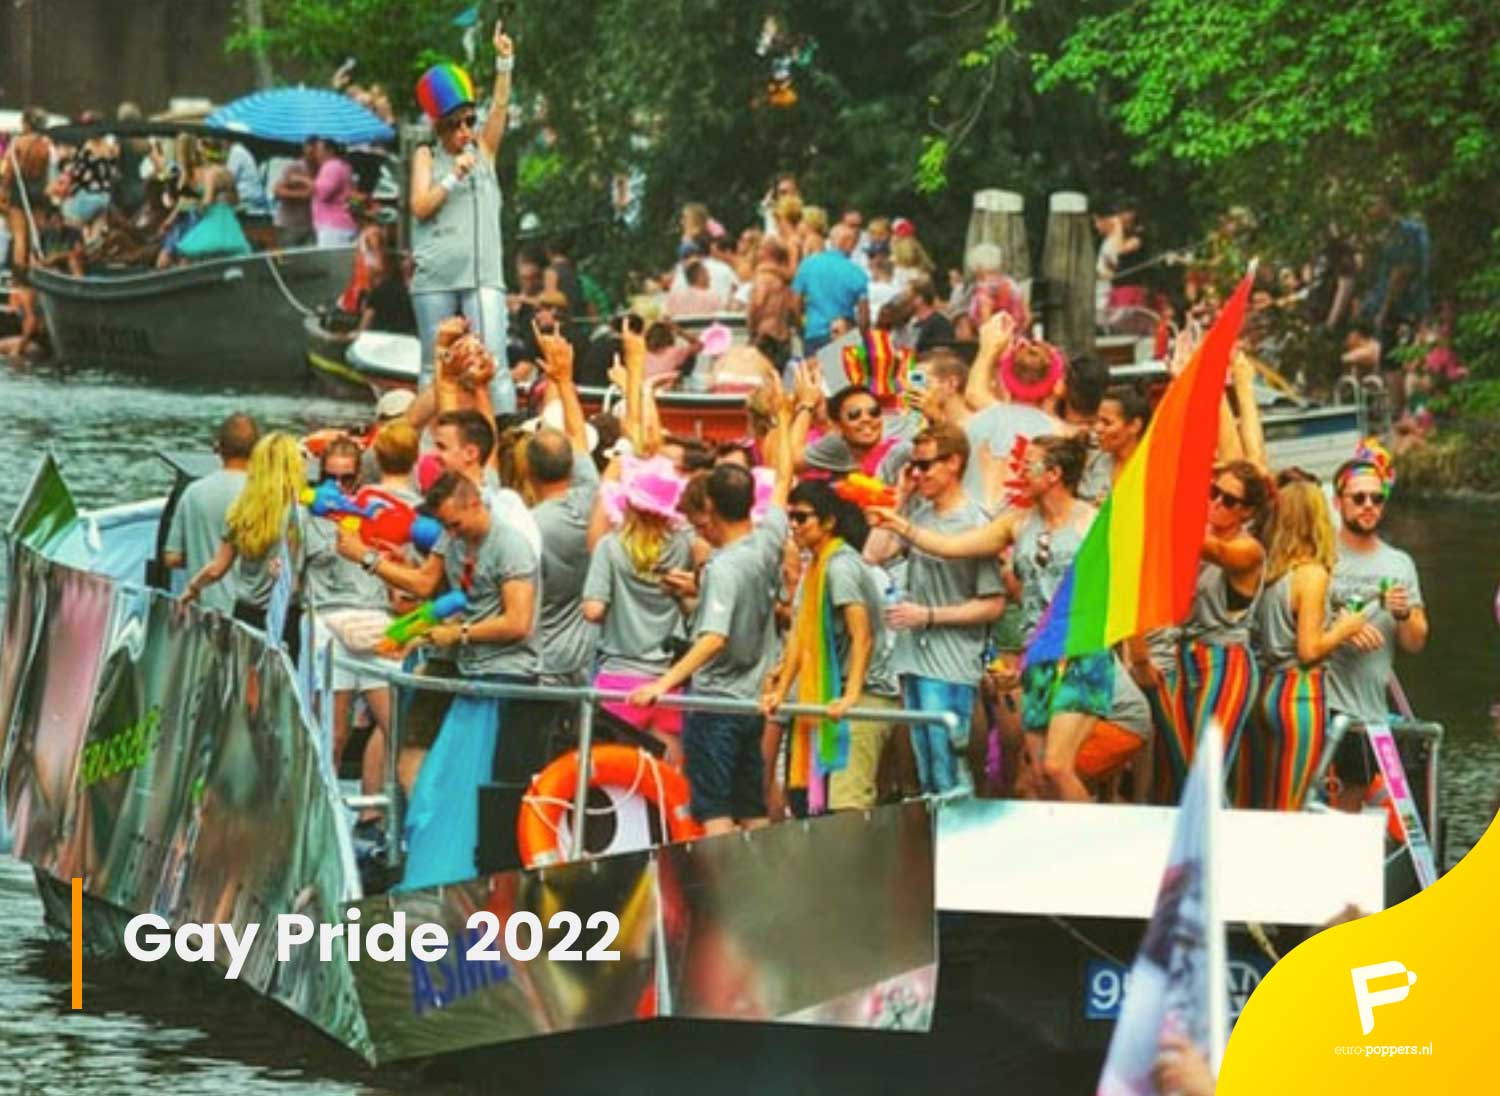 Je bekijkt nu Gay Pride 2022: waar en wanneer vinden de leukste en populairste prides van Nederlands plaats?